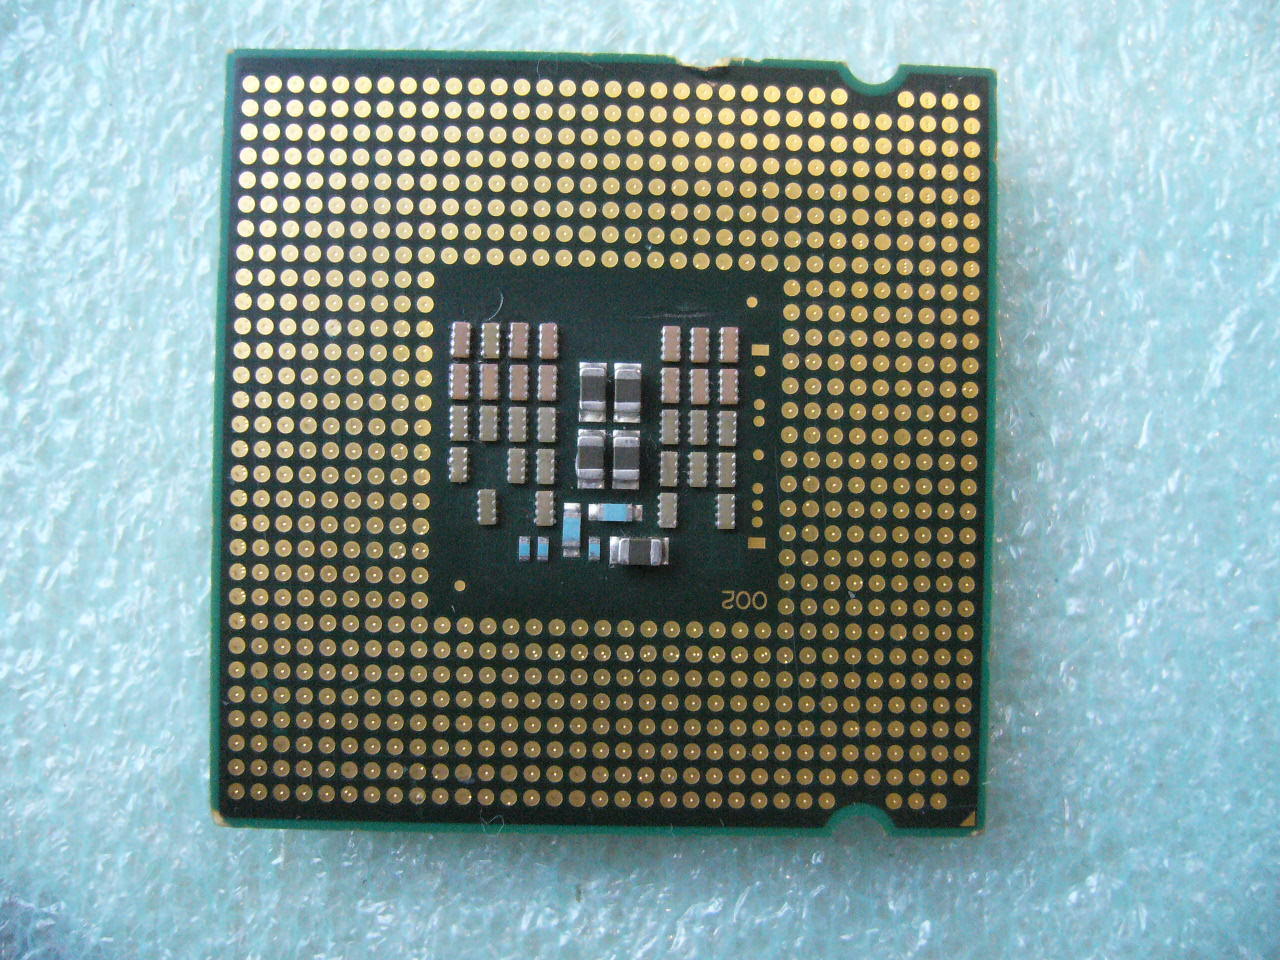 QTY 1x INTEL Core2 Quad Q8400S CPU 2.66GHz/4MB/1333Mhz LGA775 SLGT7 65W damaged - zum Schließen ins Bild klicken